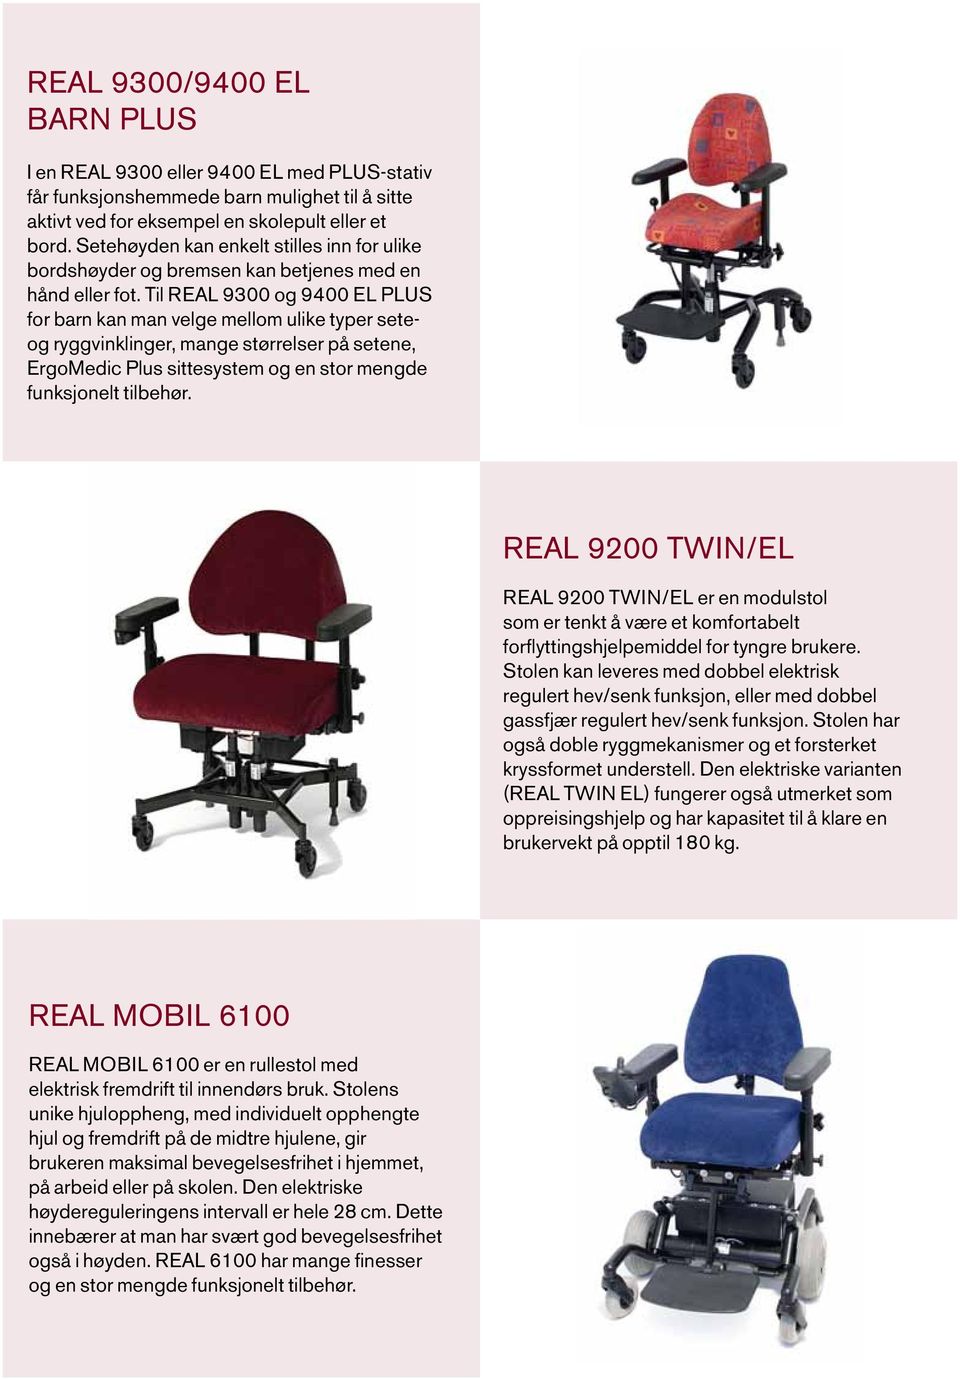 Til REAL 9300 og 9400 EL PLUS for barn kan man velge mellom ulike typer seteog ryggvinklinger, mange størrelser på setene, ErgoMedic Plus sittesystem og en stor mengde funksjonelt tilbehør.